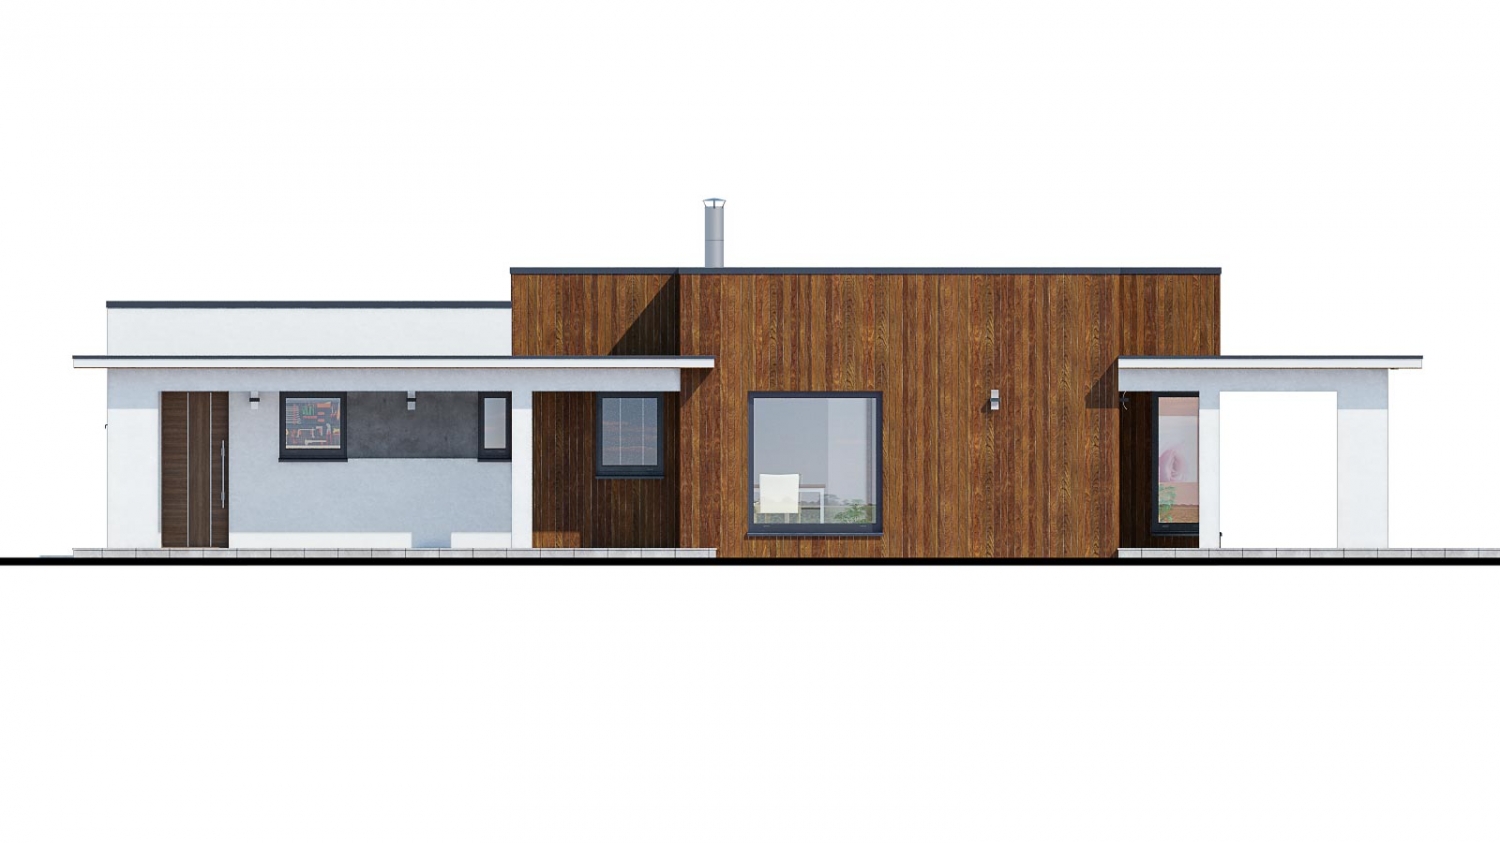 Pohľad 3. - Moderní dům zděný s dvojgaráží, plochou střechou a krytou terasou.